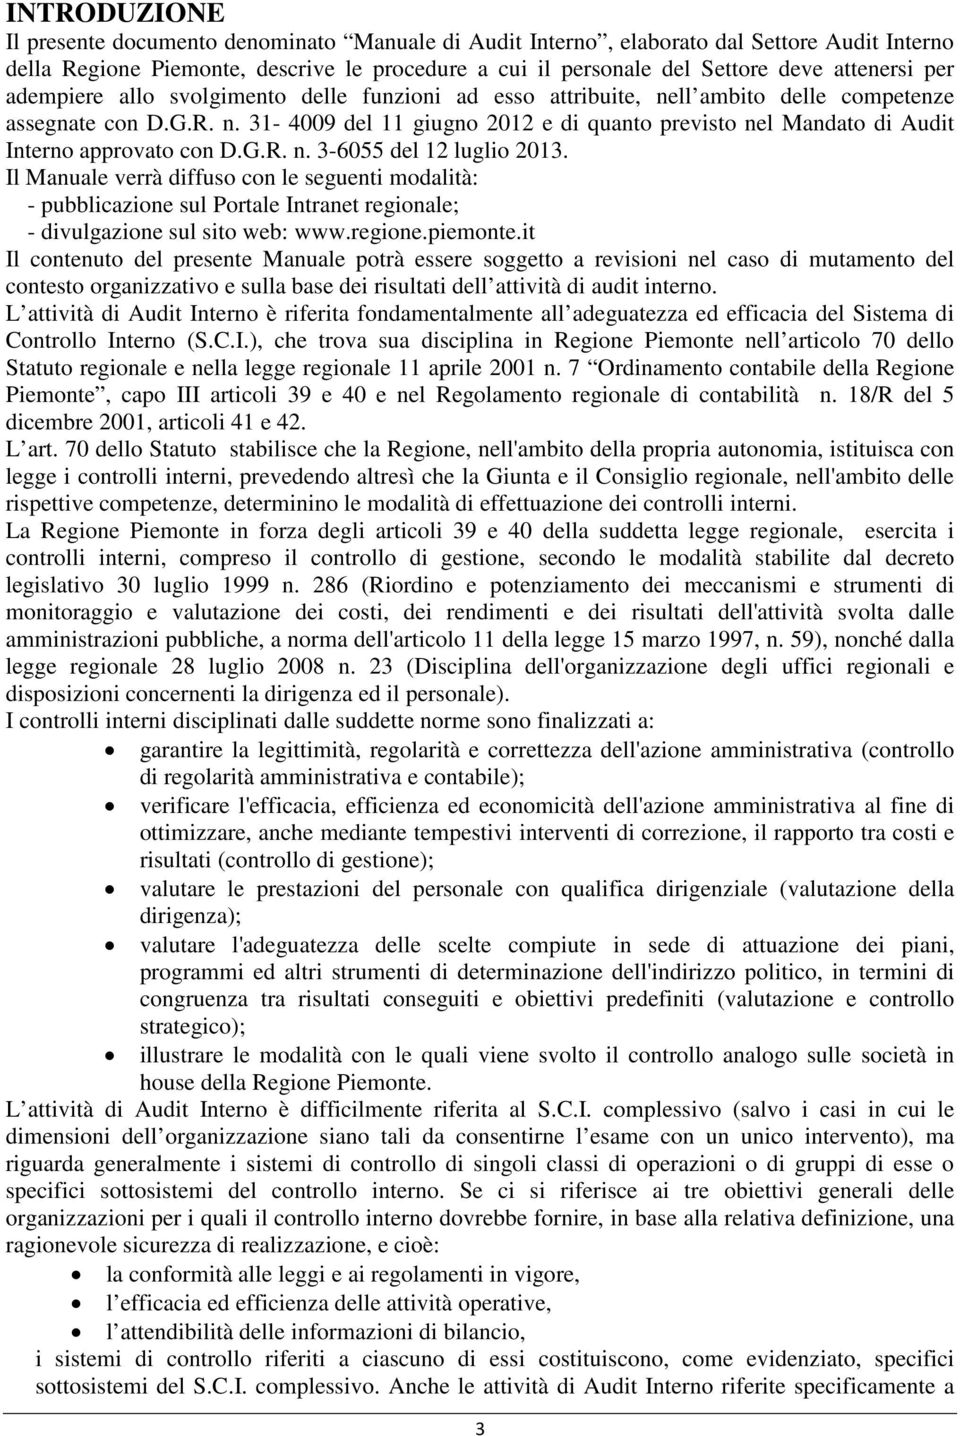 G.R. n. 3-6055 del 12 luglio 2013. Il Manuale verrà diffuso con le seguenti modalità: - pubblicazione sul Portale Intranet regionale; - divulgazione sul sito web: www.regione.piemonte.